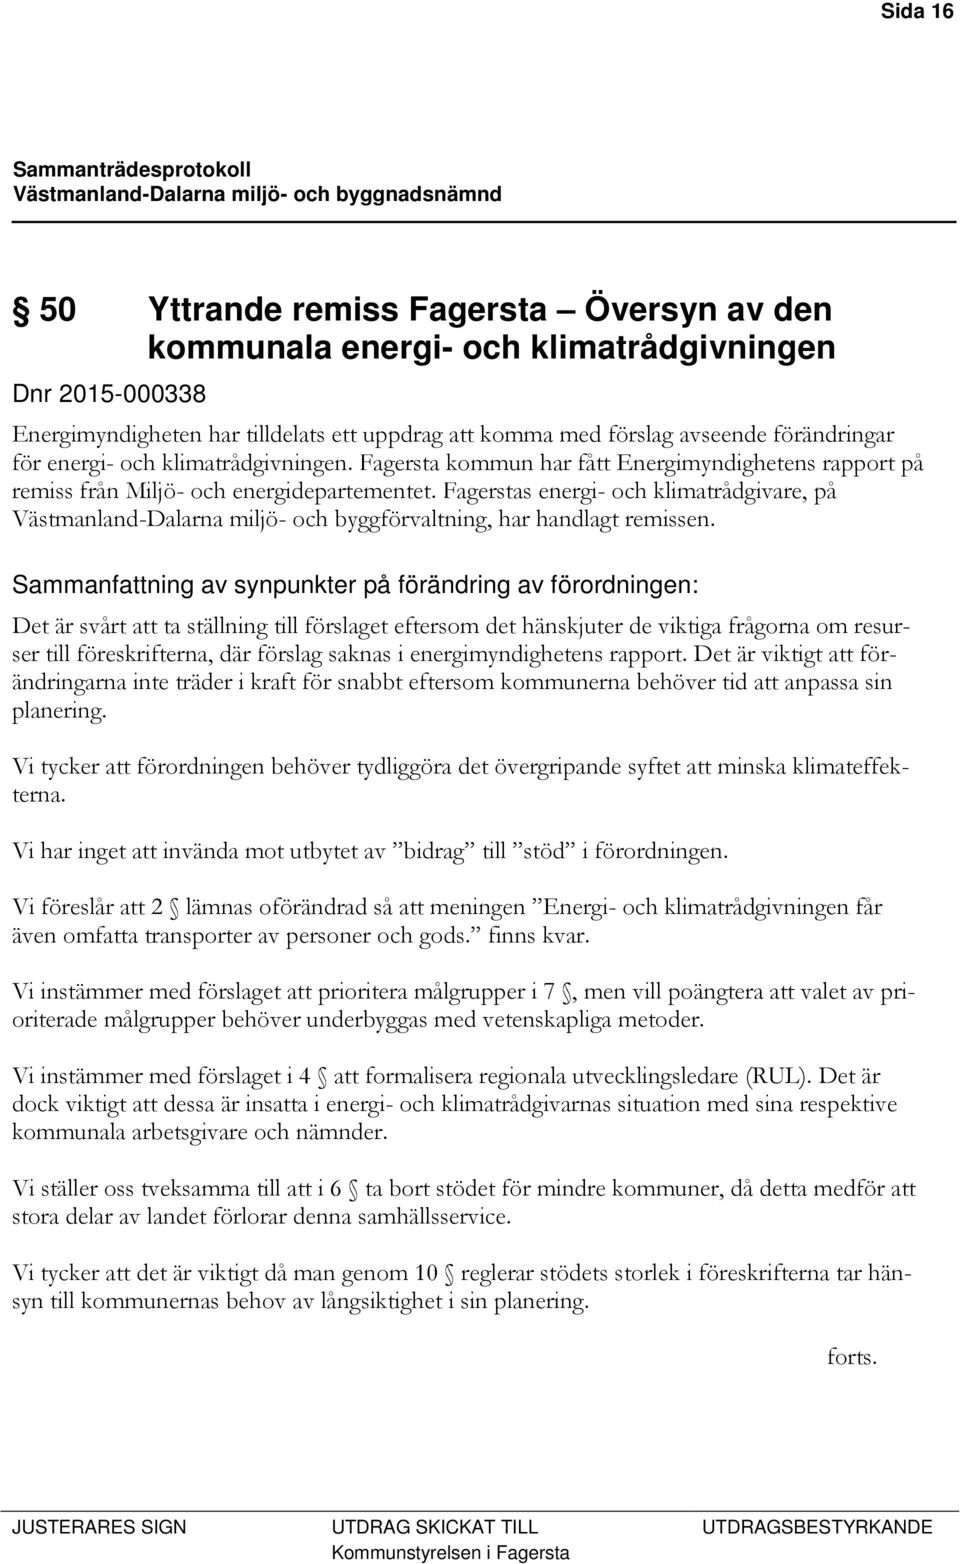 Fagerstas energi- och klimatrådgivare, på Västmanland-Dalarna miljö- och byggförvaltning, har handlagt remissen.